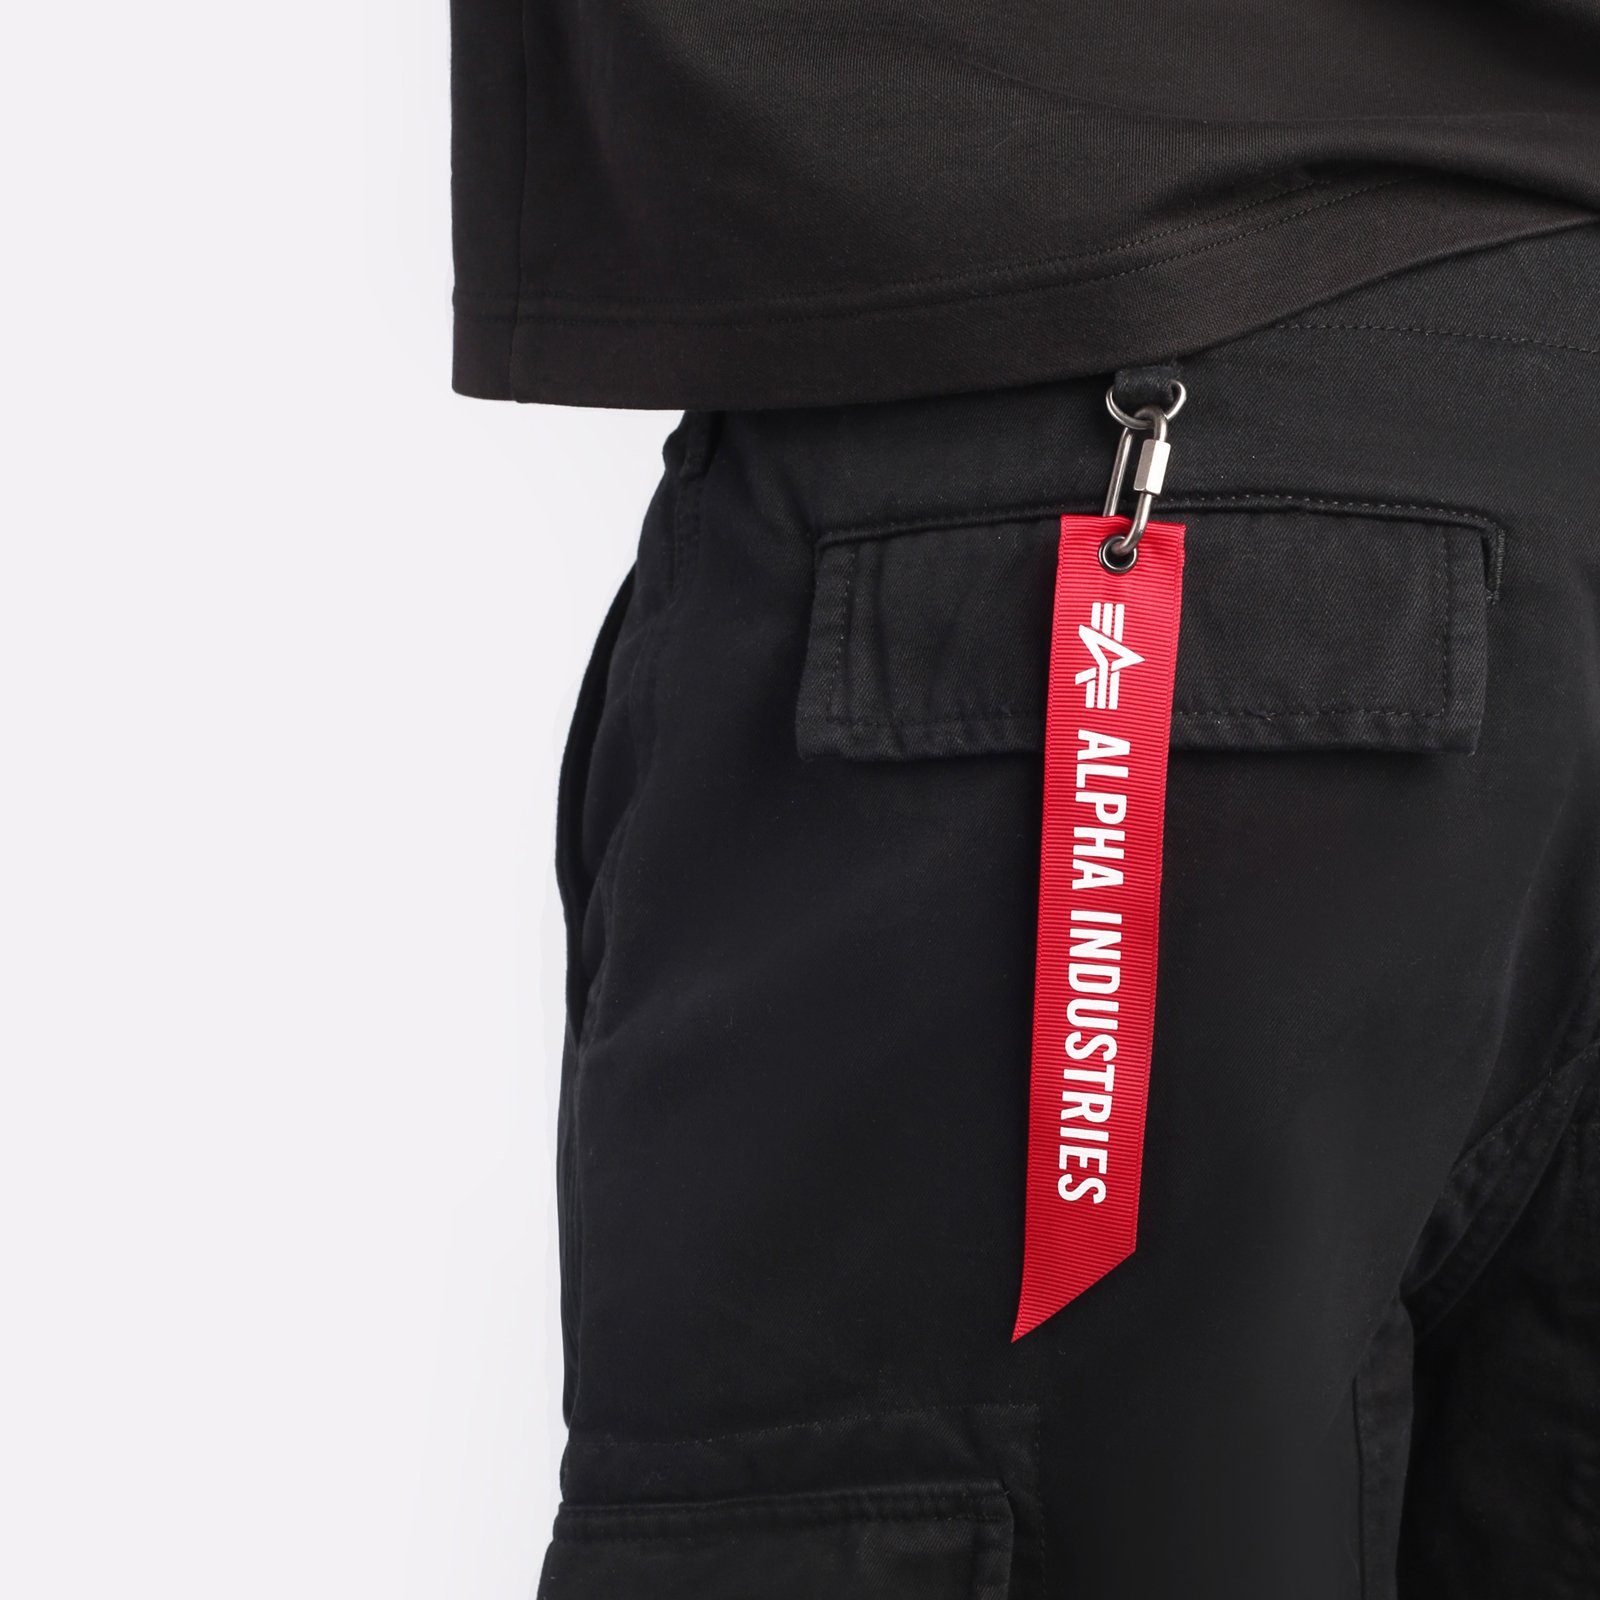 мужские брюки Alpha Industries ACU Pant  (MBA52501C1-black)  - цена, описание, фото 4